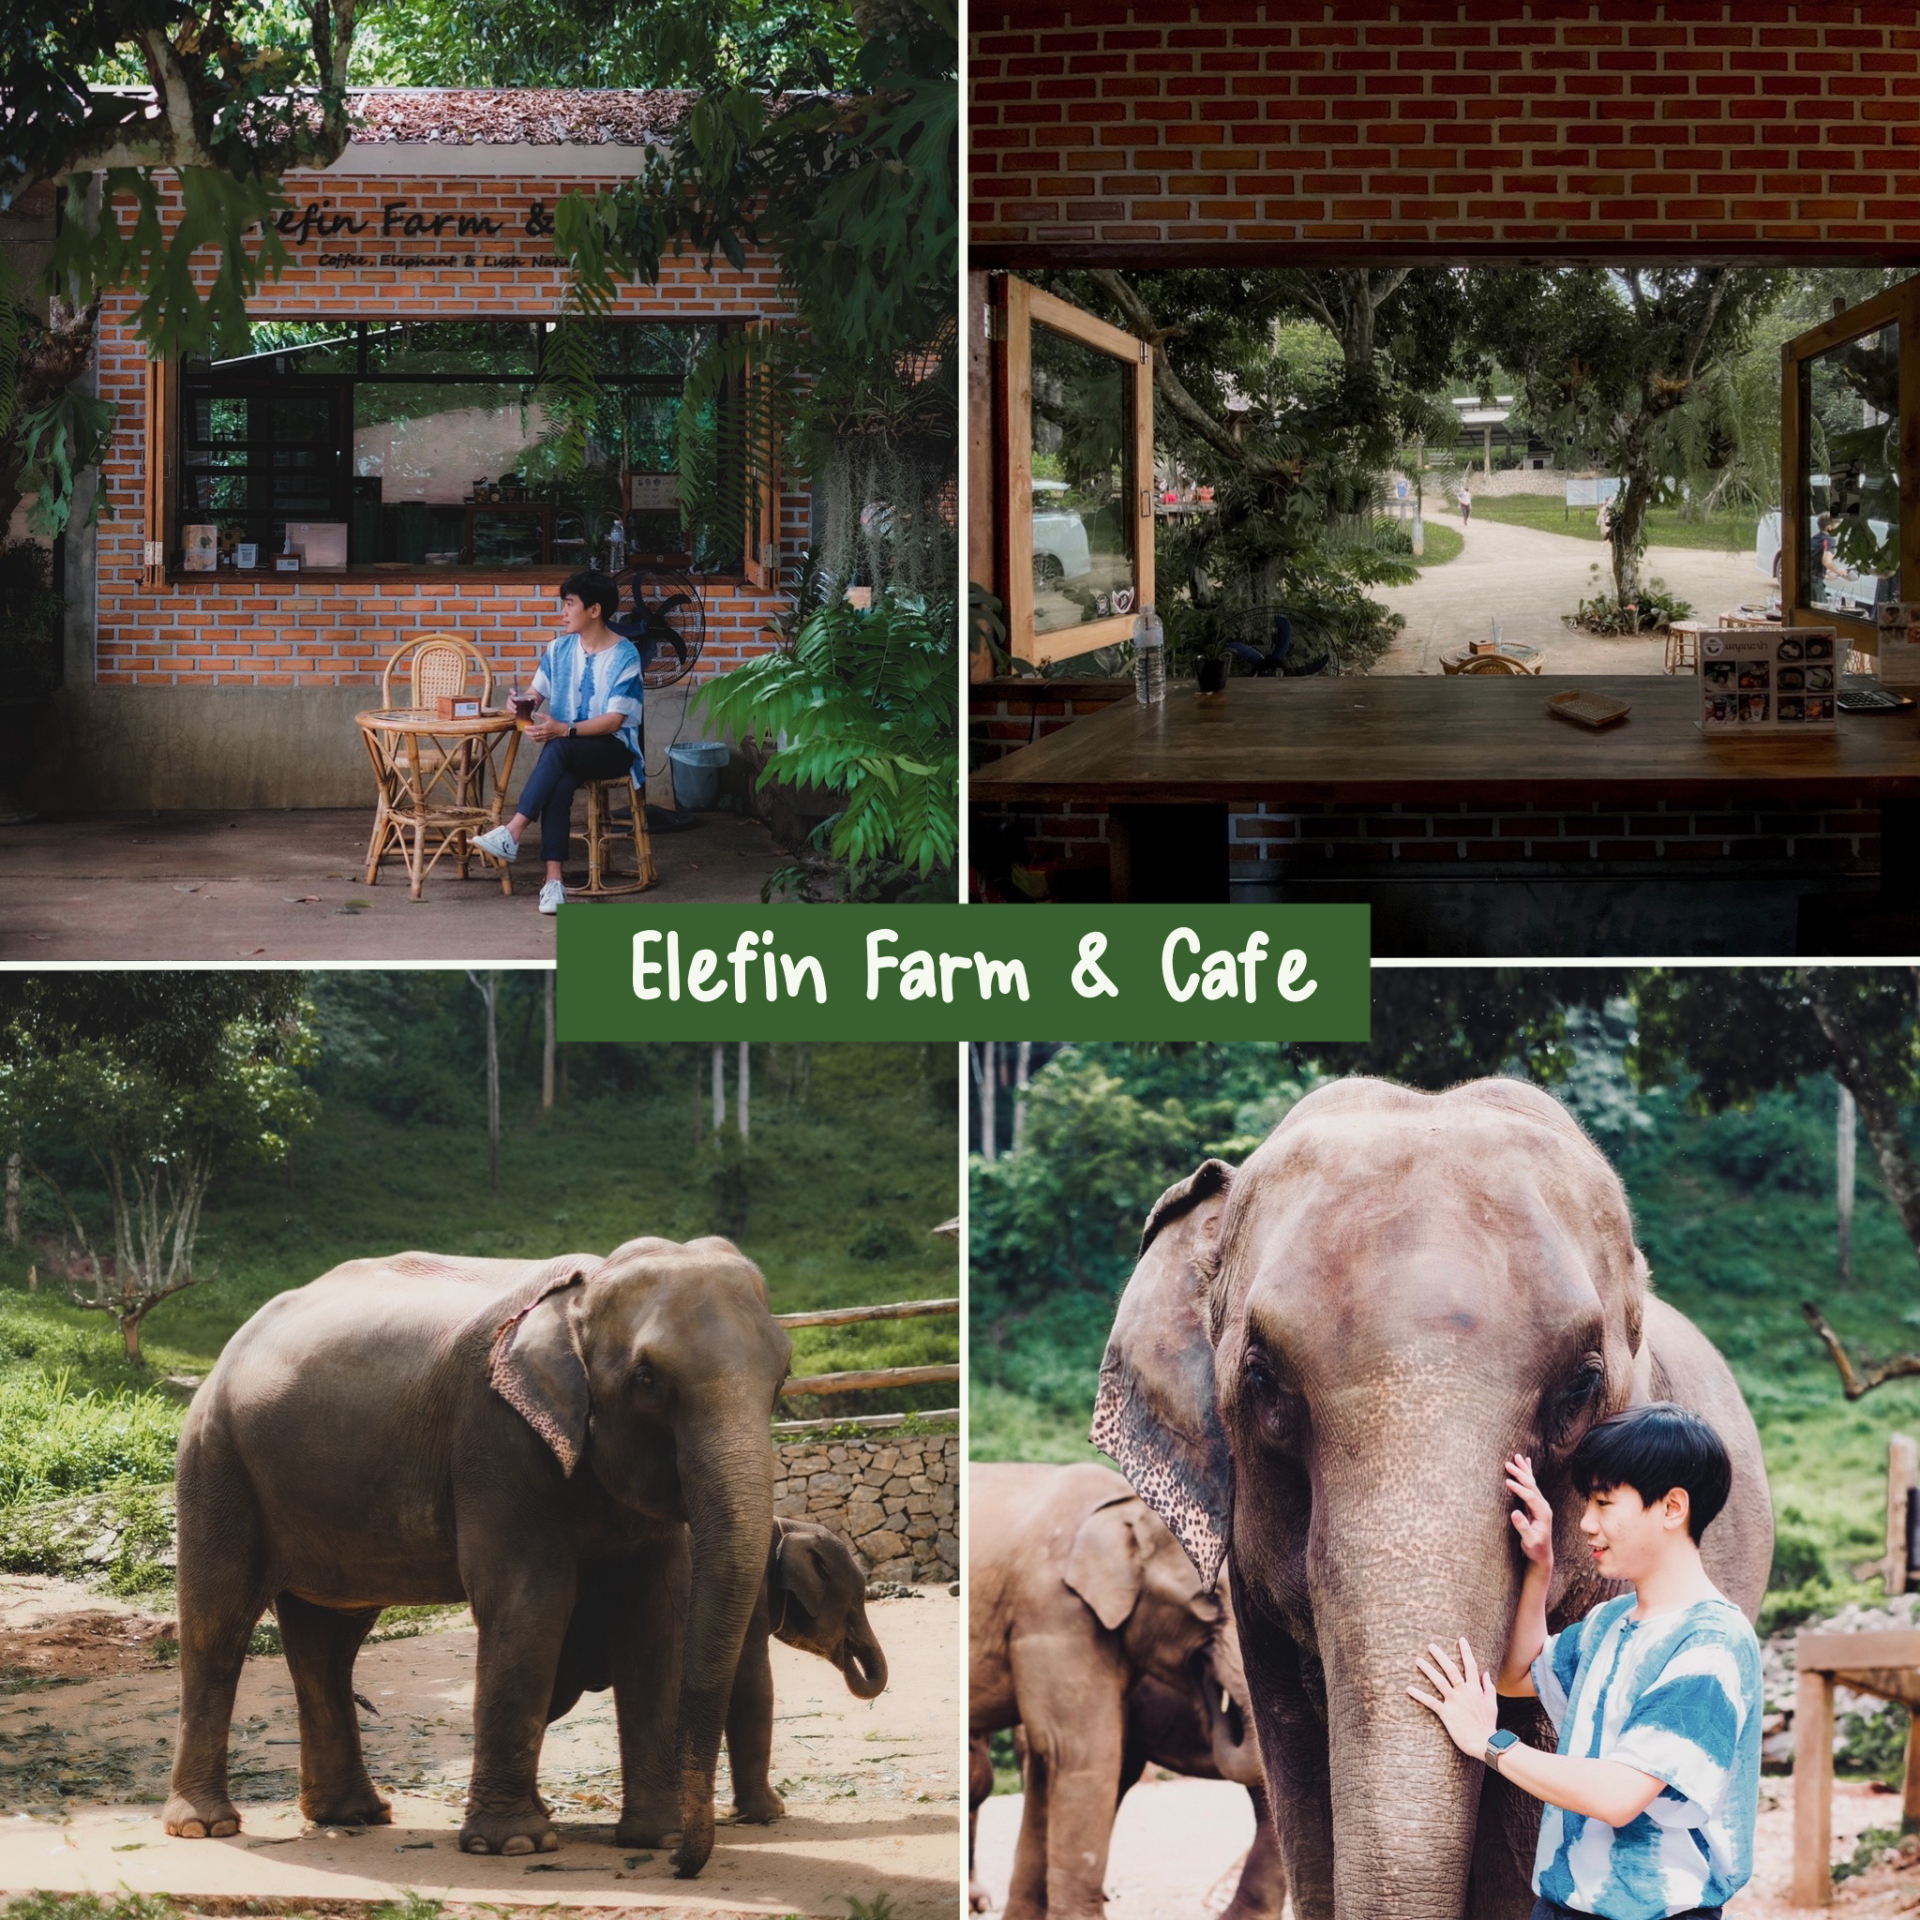 Elefin Farm & Cafe เอเลฟิน ฟาร์ม แอนด์ คาเฟ่ ถ่ายรูปกับช้าง ที่เชียงใหม่